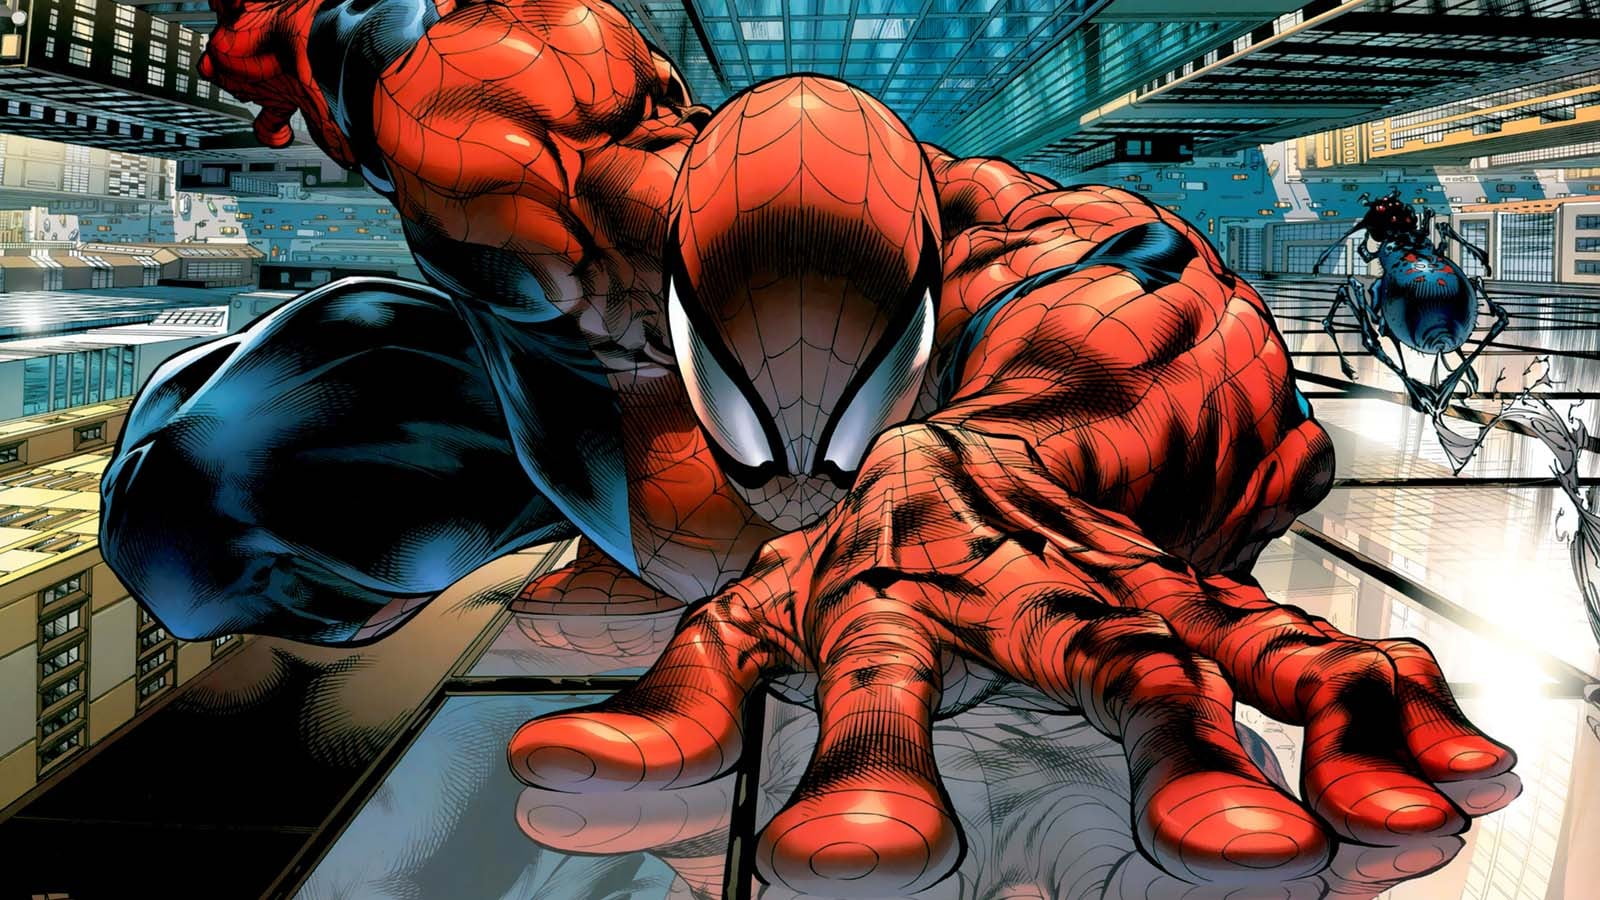 Marvel Spider-Man illustration, Spider-Man, Marvel Comics